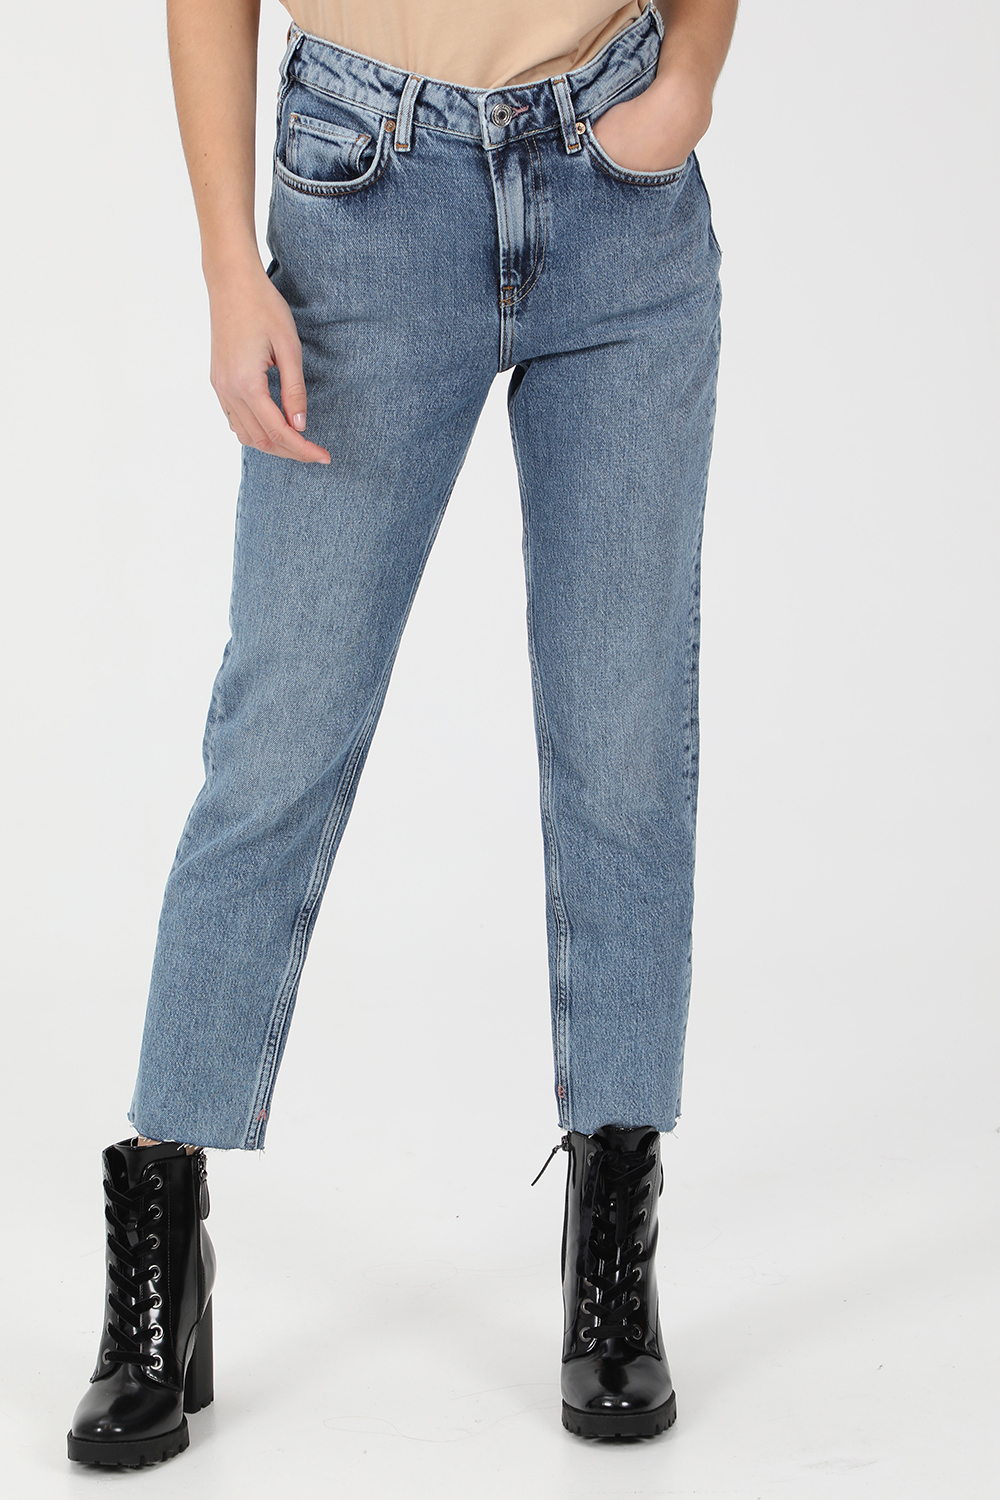 SCOTCH & SODA – Γυναικείο jean παντελόνι SCOTCH & SODA 5 pocket high rise slim fit μπλε 1821128.0-0013